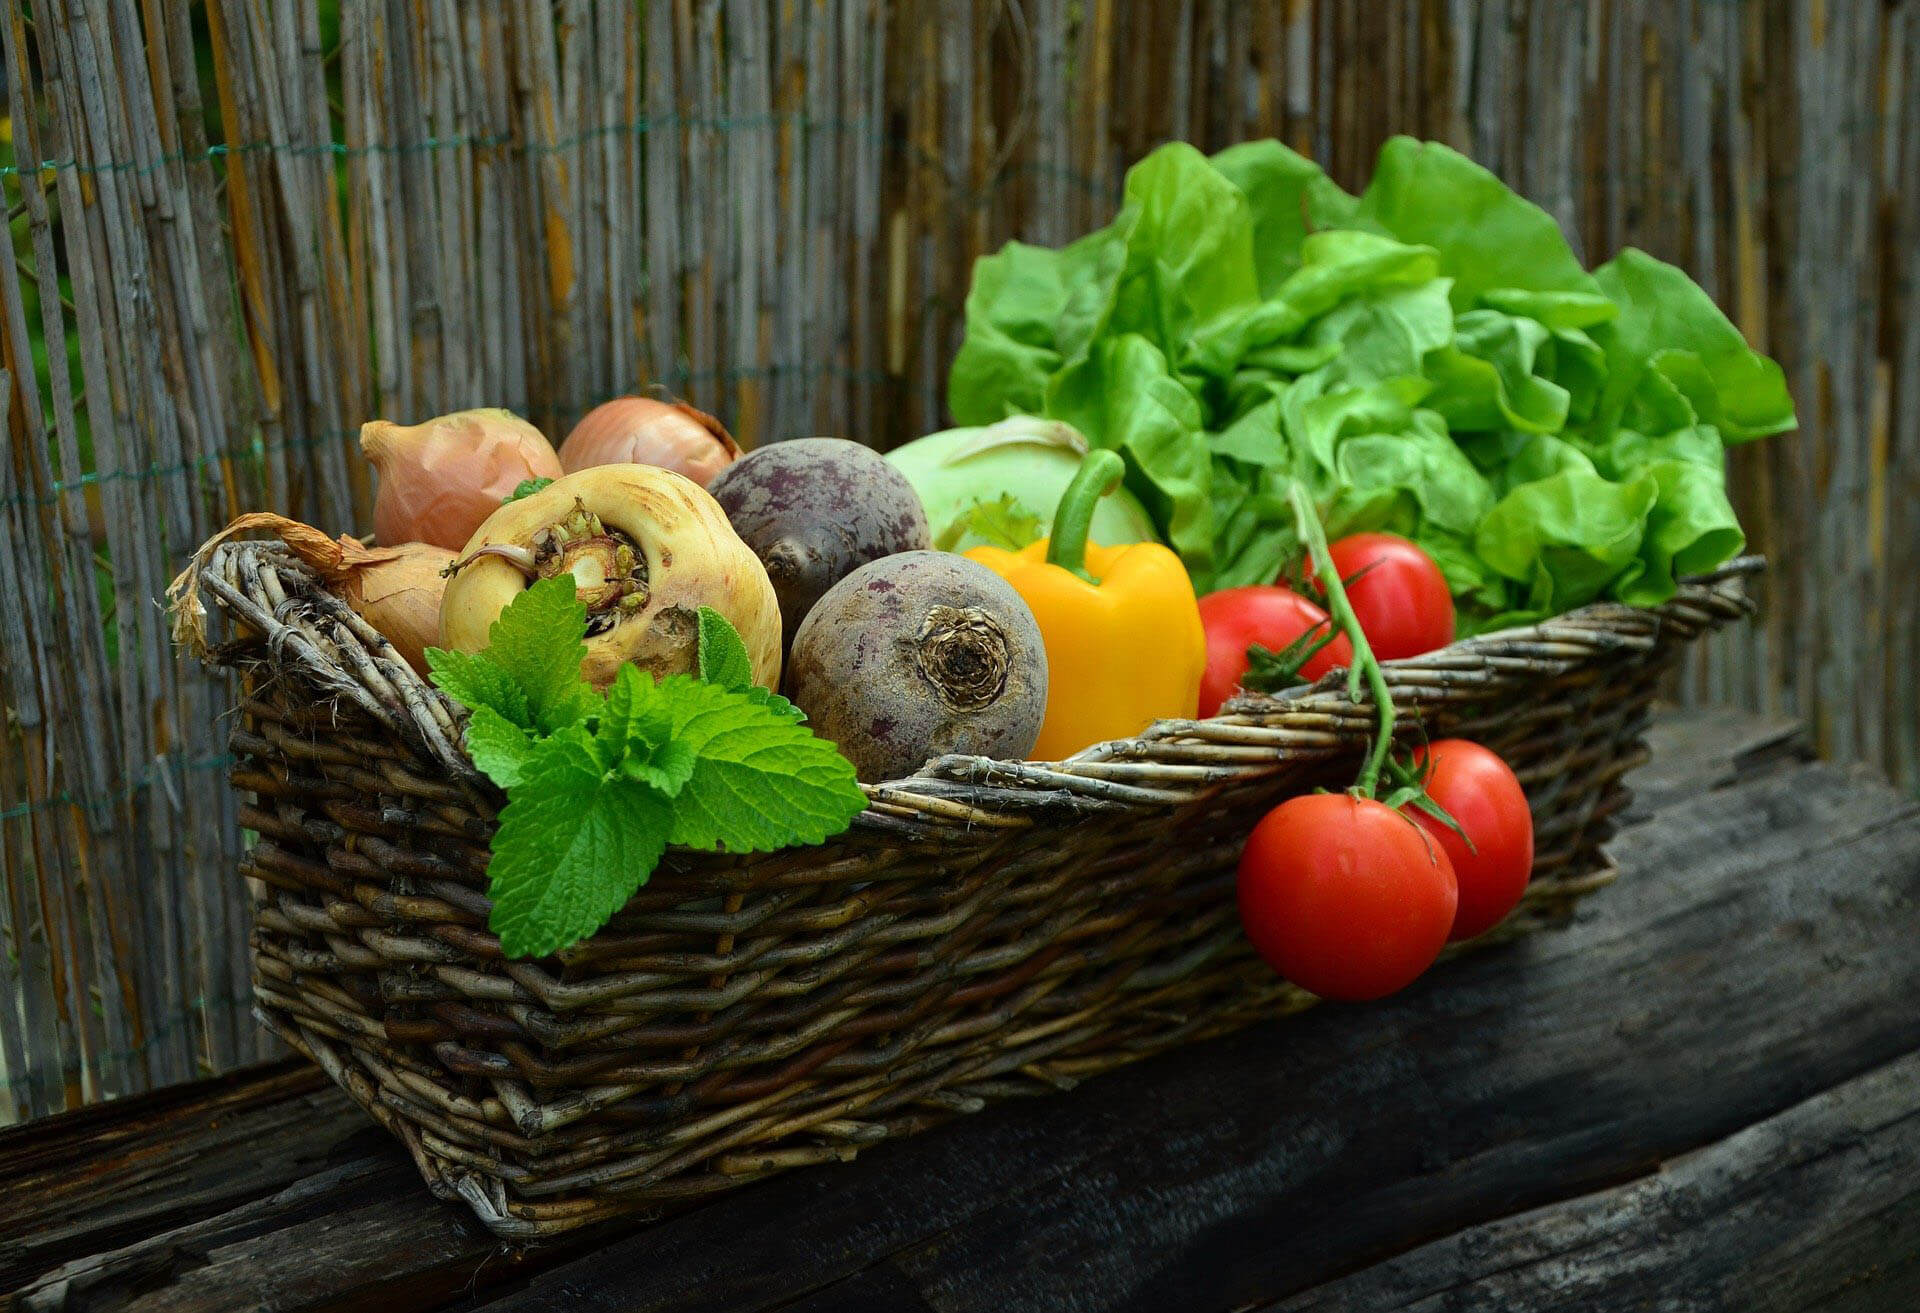 Las verduras y hortalizas son esenciales para mantener una dieta equilibrada